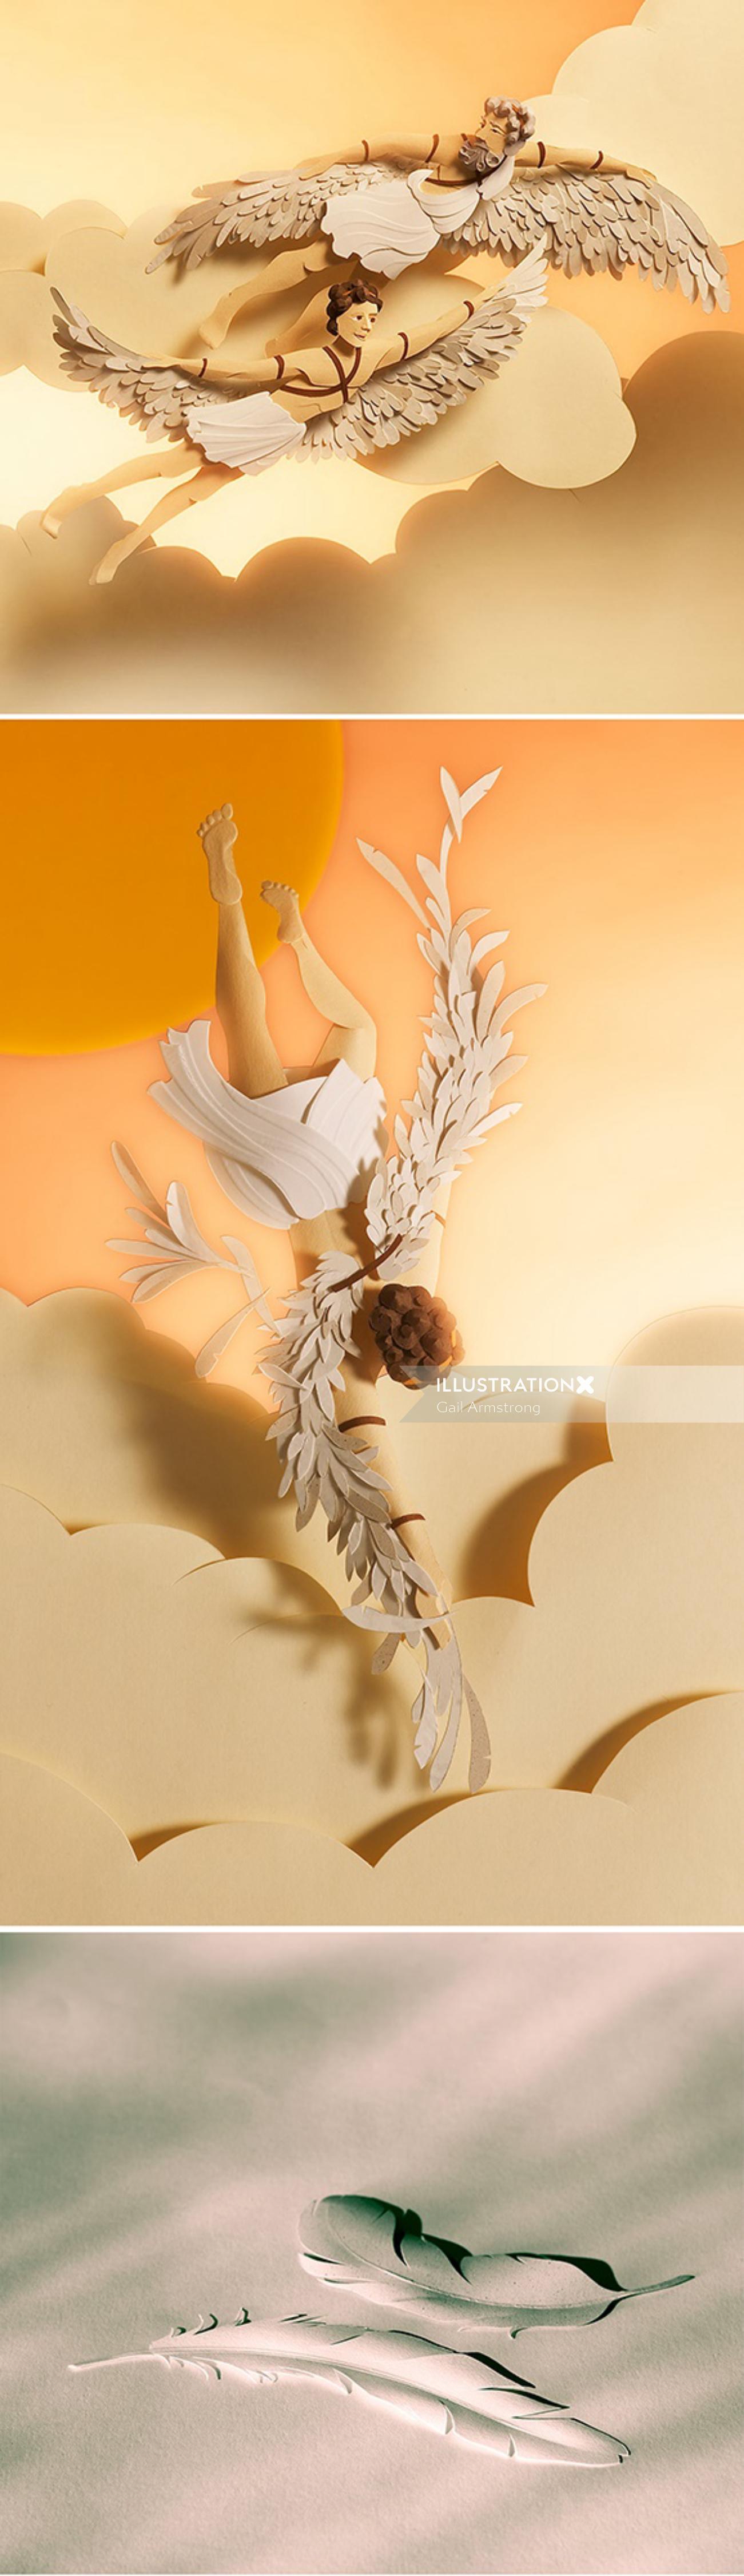 Anjos de arte em papel voando